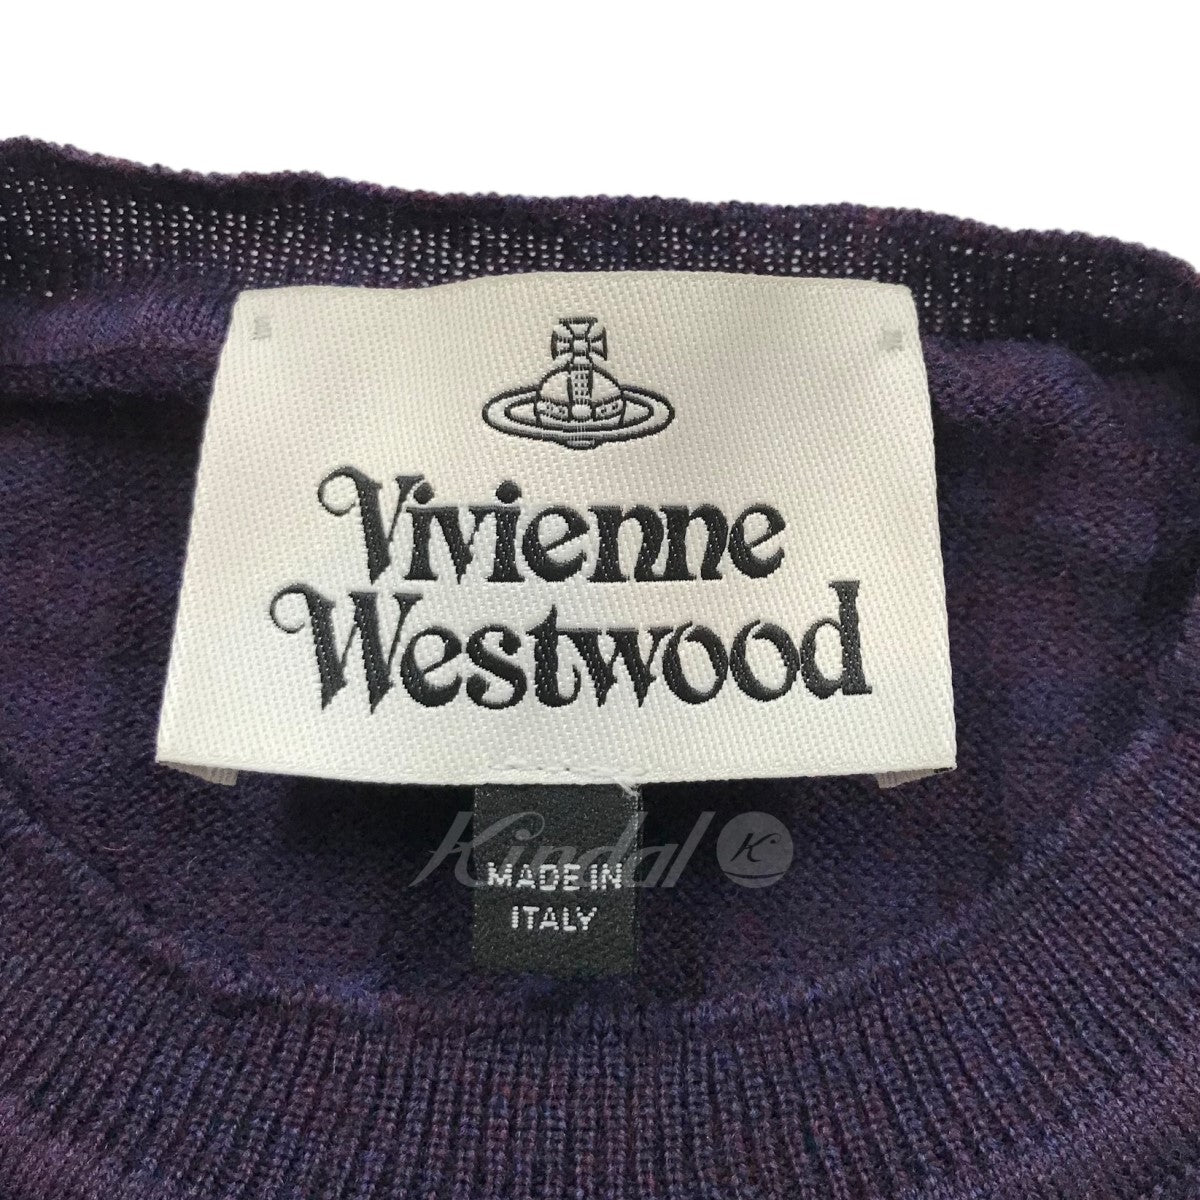 Vivienne Westwood(ヴィヴィアンウエストウッド) 19AWオーブ刺繍クルー ...